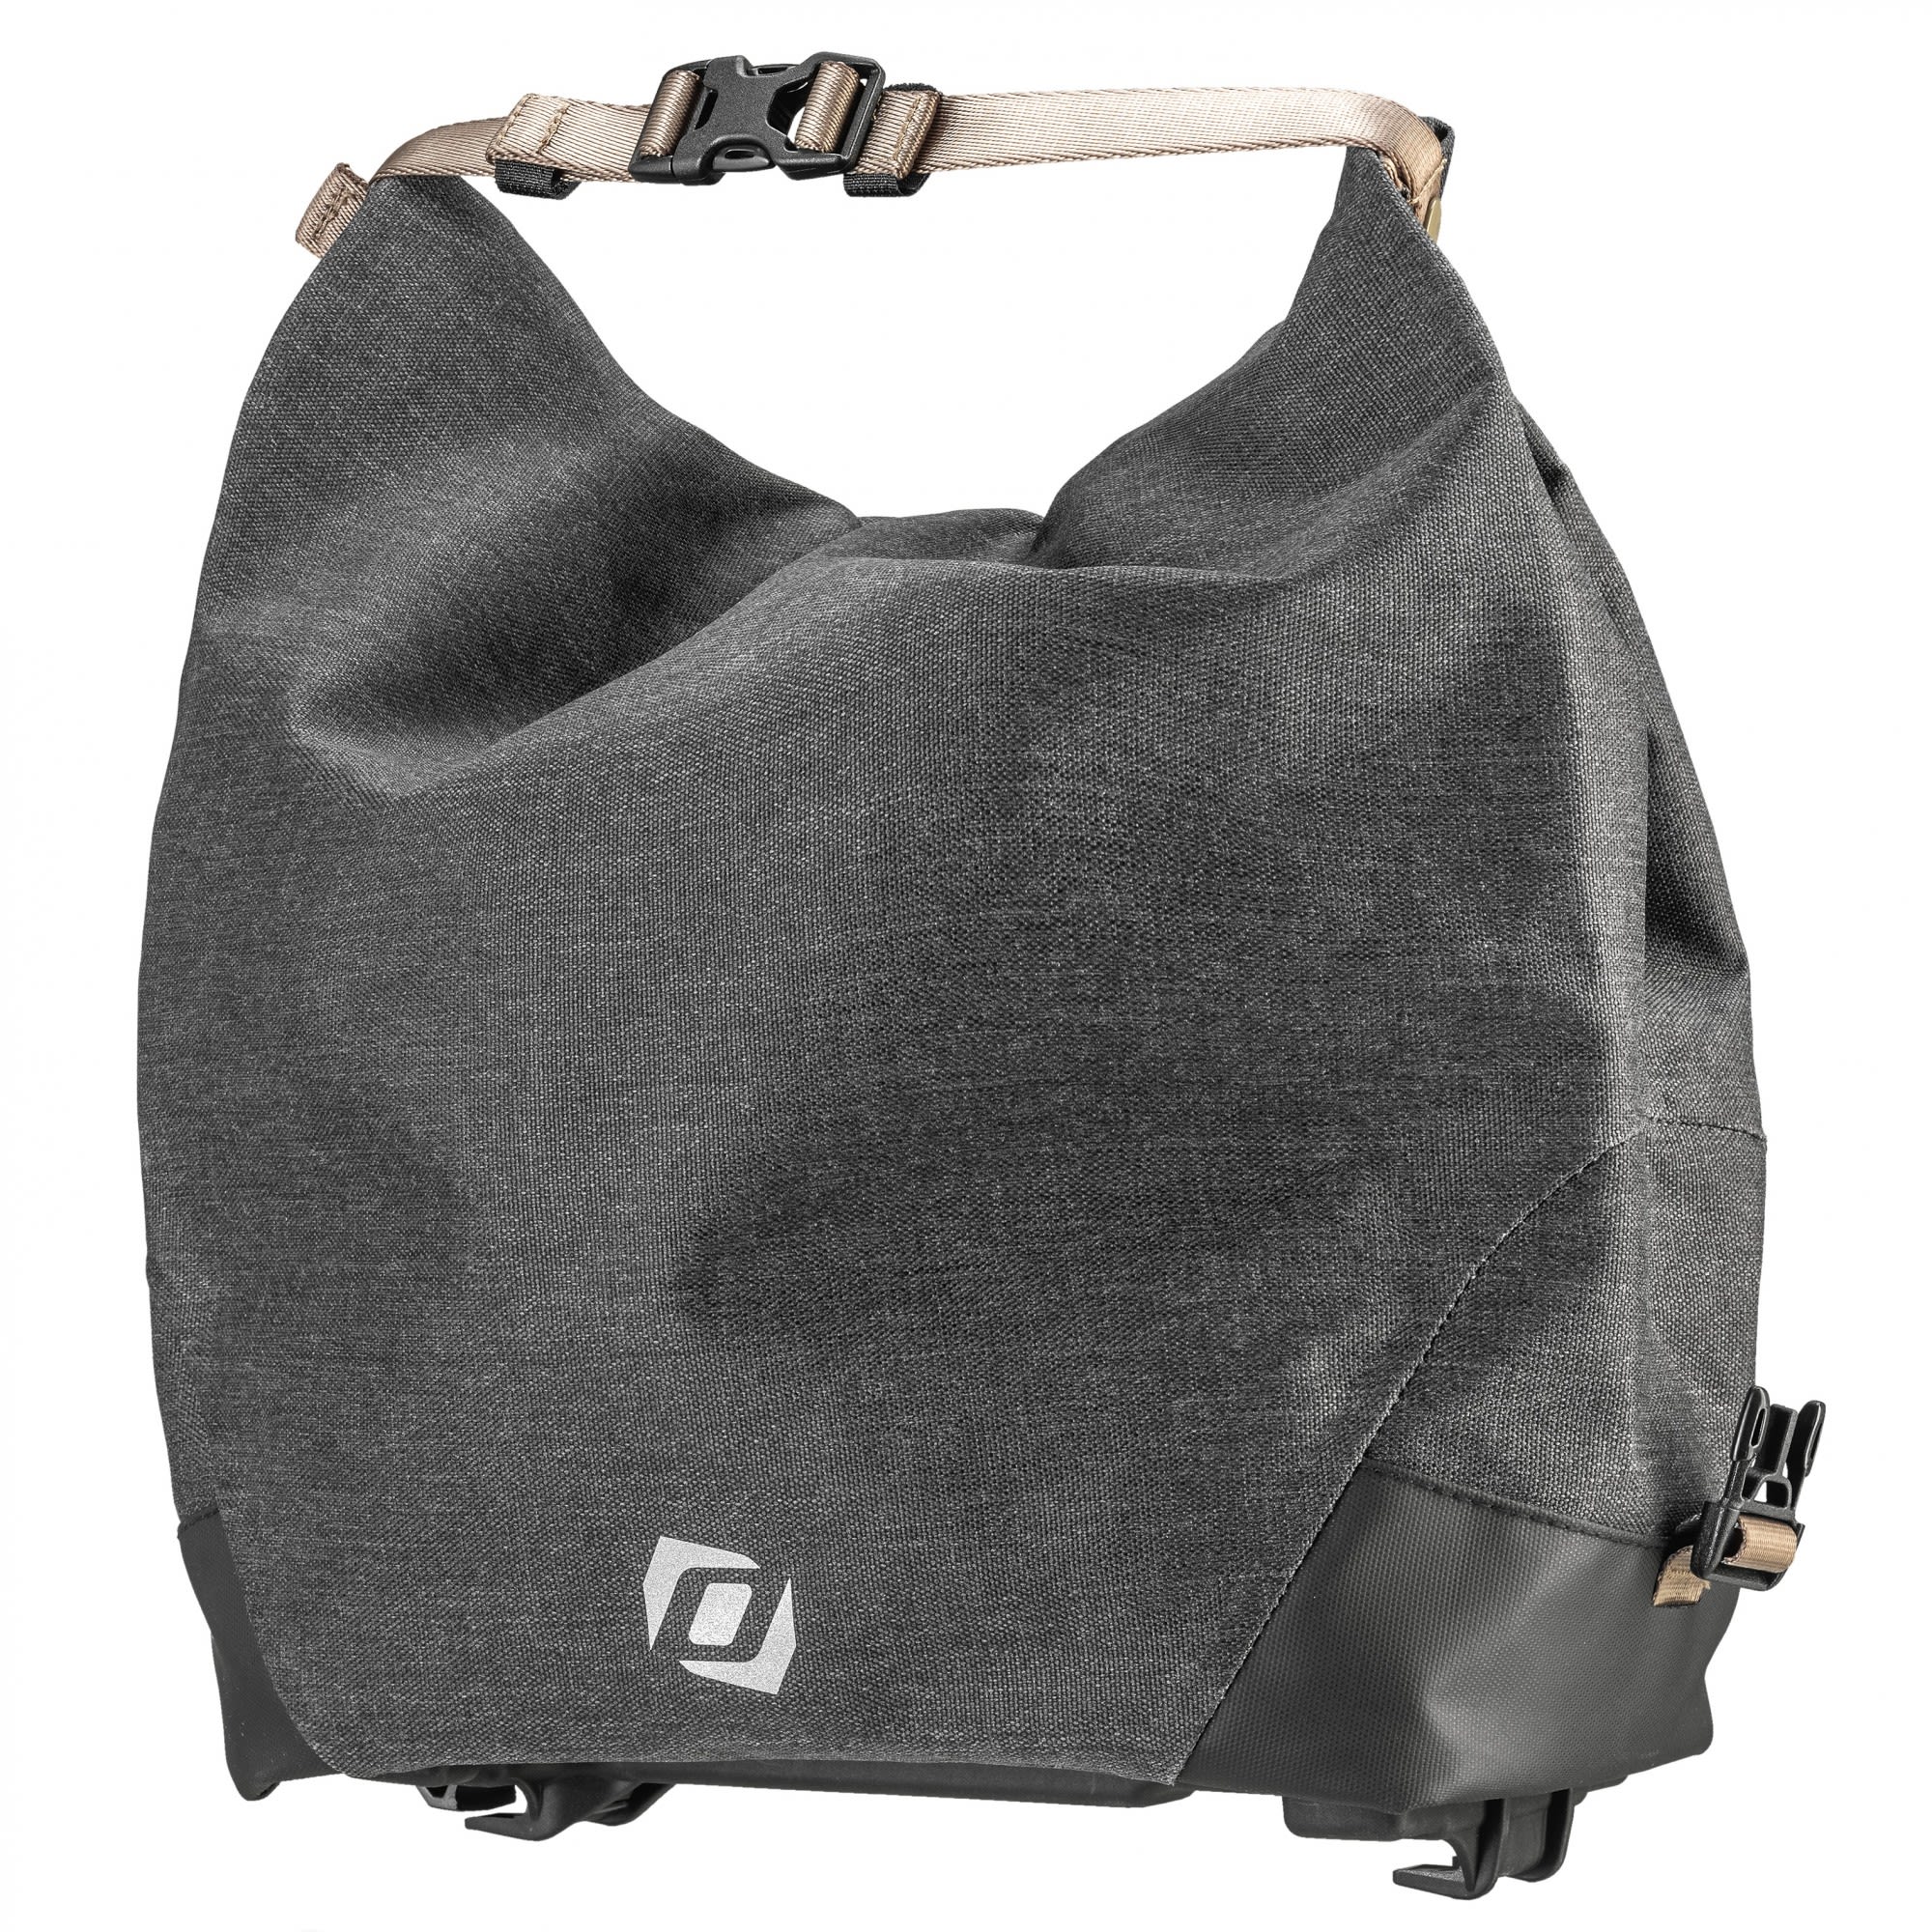 Syncros Gepcktrgertasche 2-0 Schwarz- Taschen- Grsse 20l - Farbe Black unter Syncros